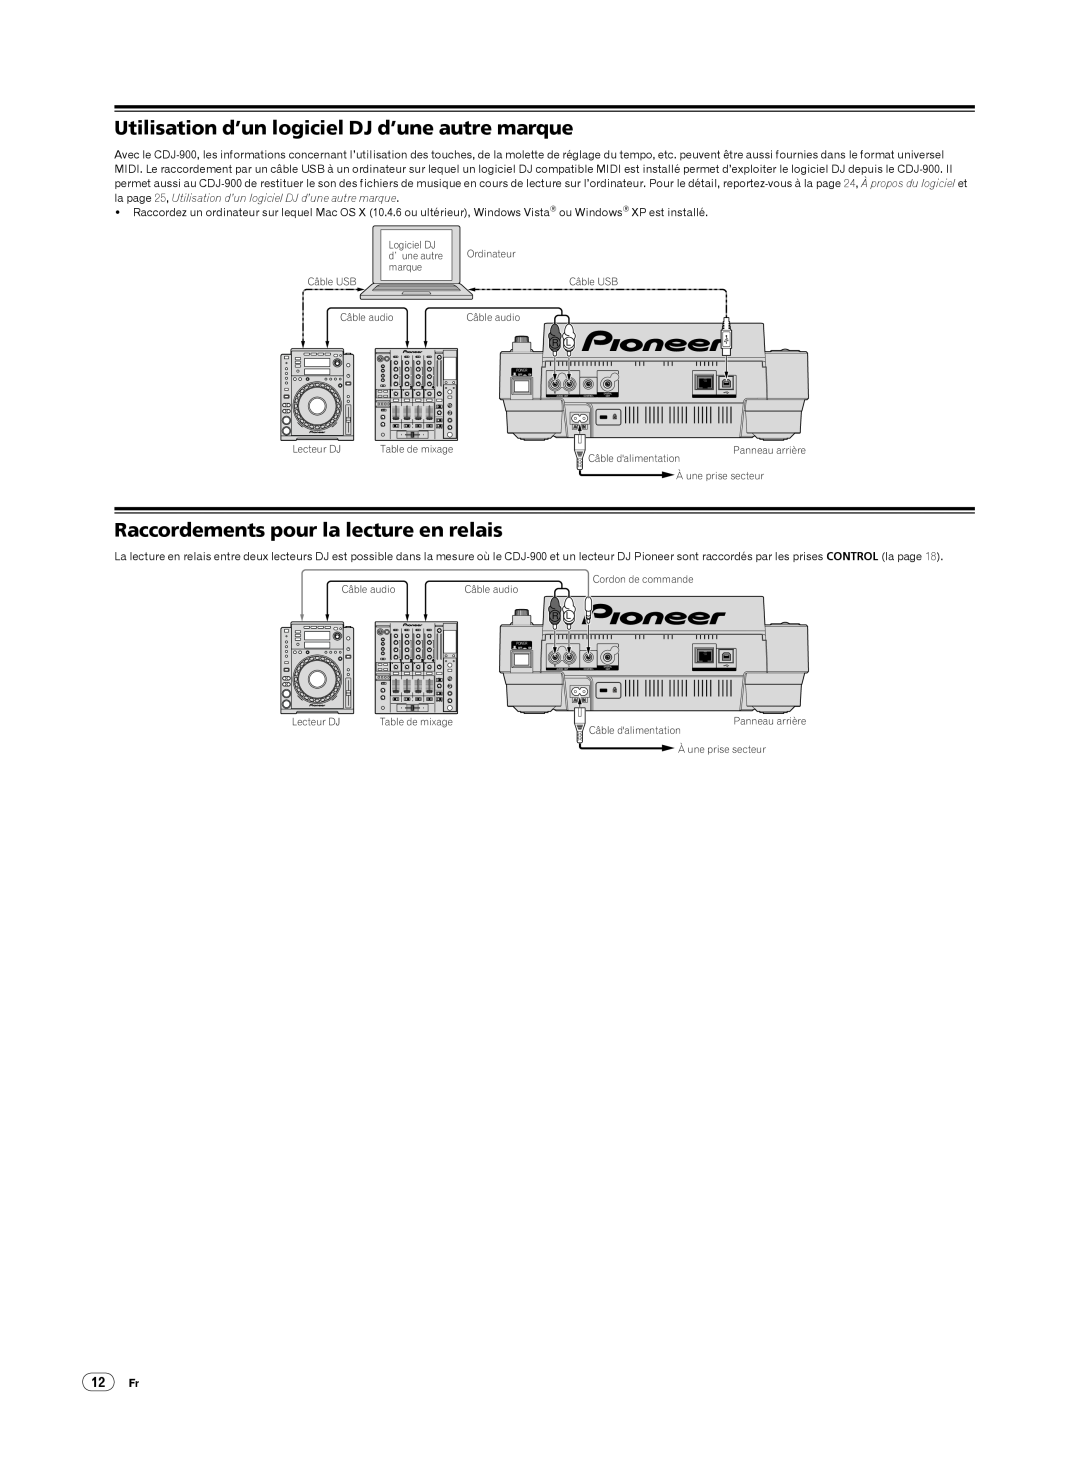 Pioneer CDJ-900 Utilisation d’un logiciel DJ d’une autre marque, Raccordements pour la lecture en relais, 12Fr 